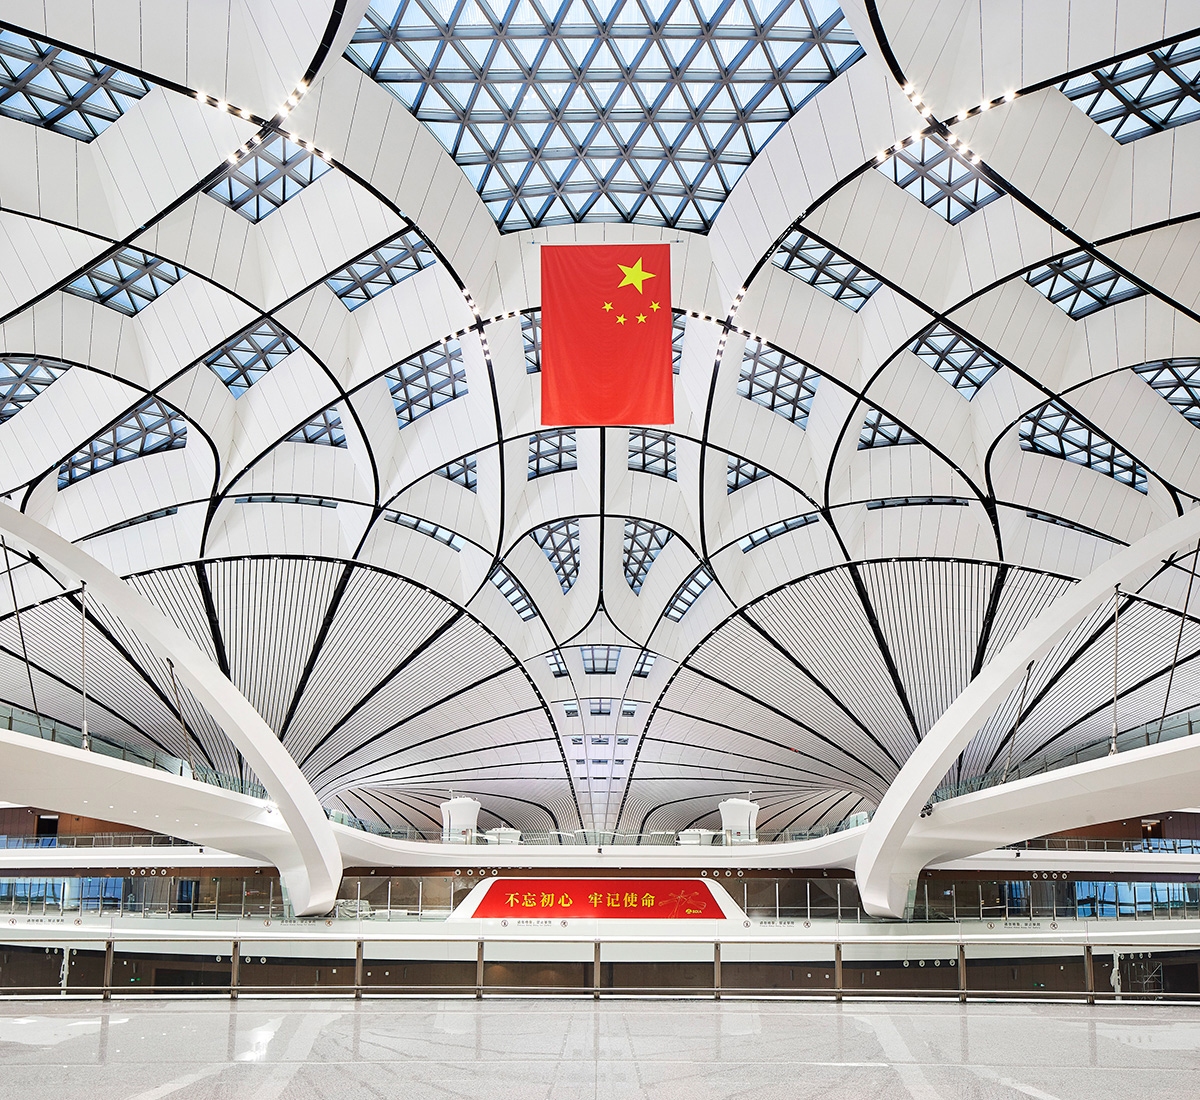 扎哈·哈迪德设计的机场内部——天花板结构